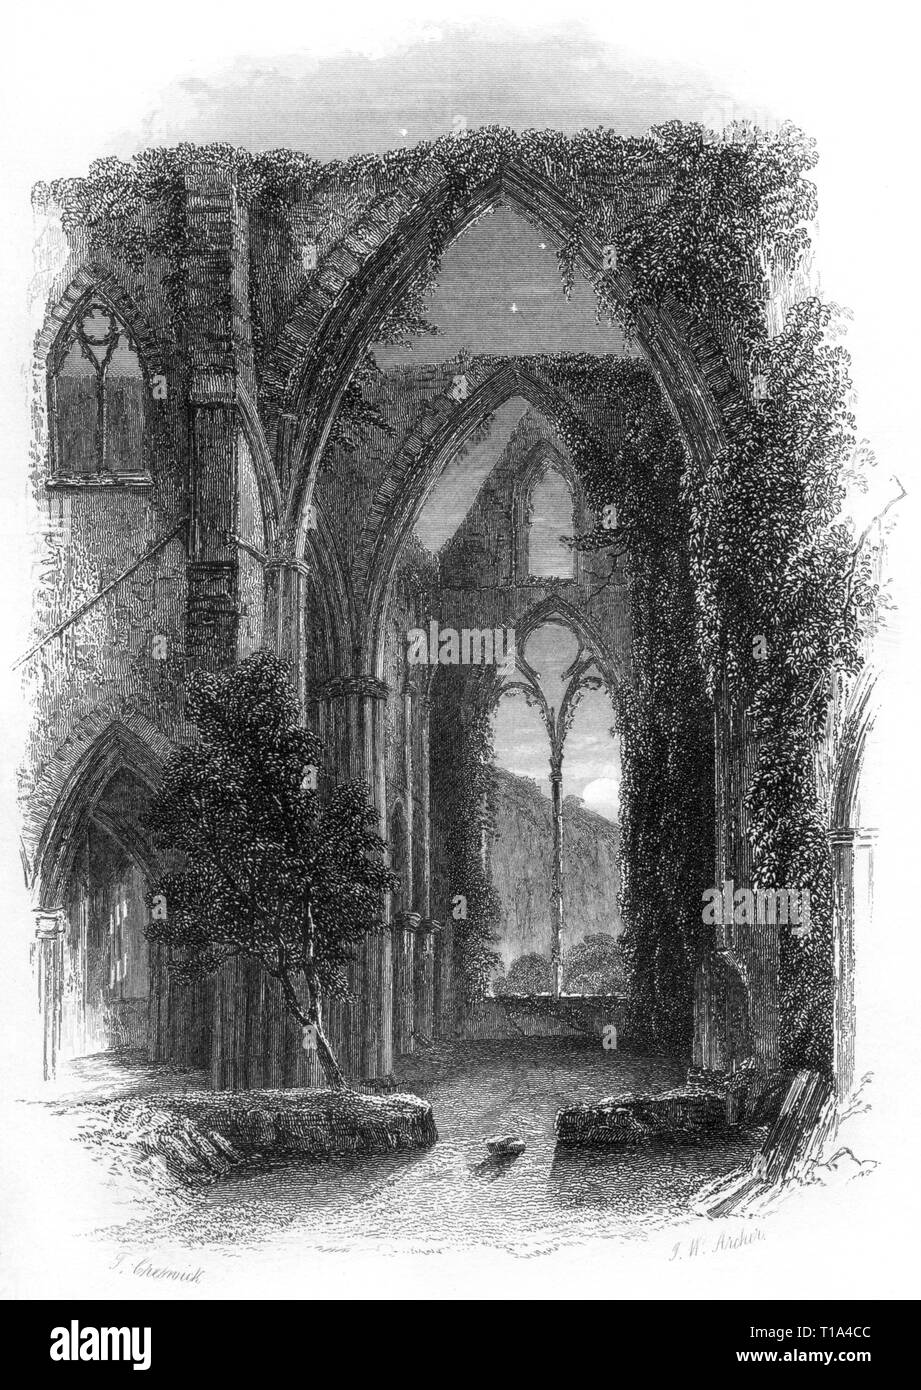 Une gravure de l'abbaye de Tintern, Monmouthshire, pays de Galles Royaume-Uni numérisée à haute résolution d'un livre publié en 1841. Cru libre de droit d'auteur. Banque D'Images